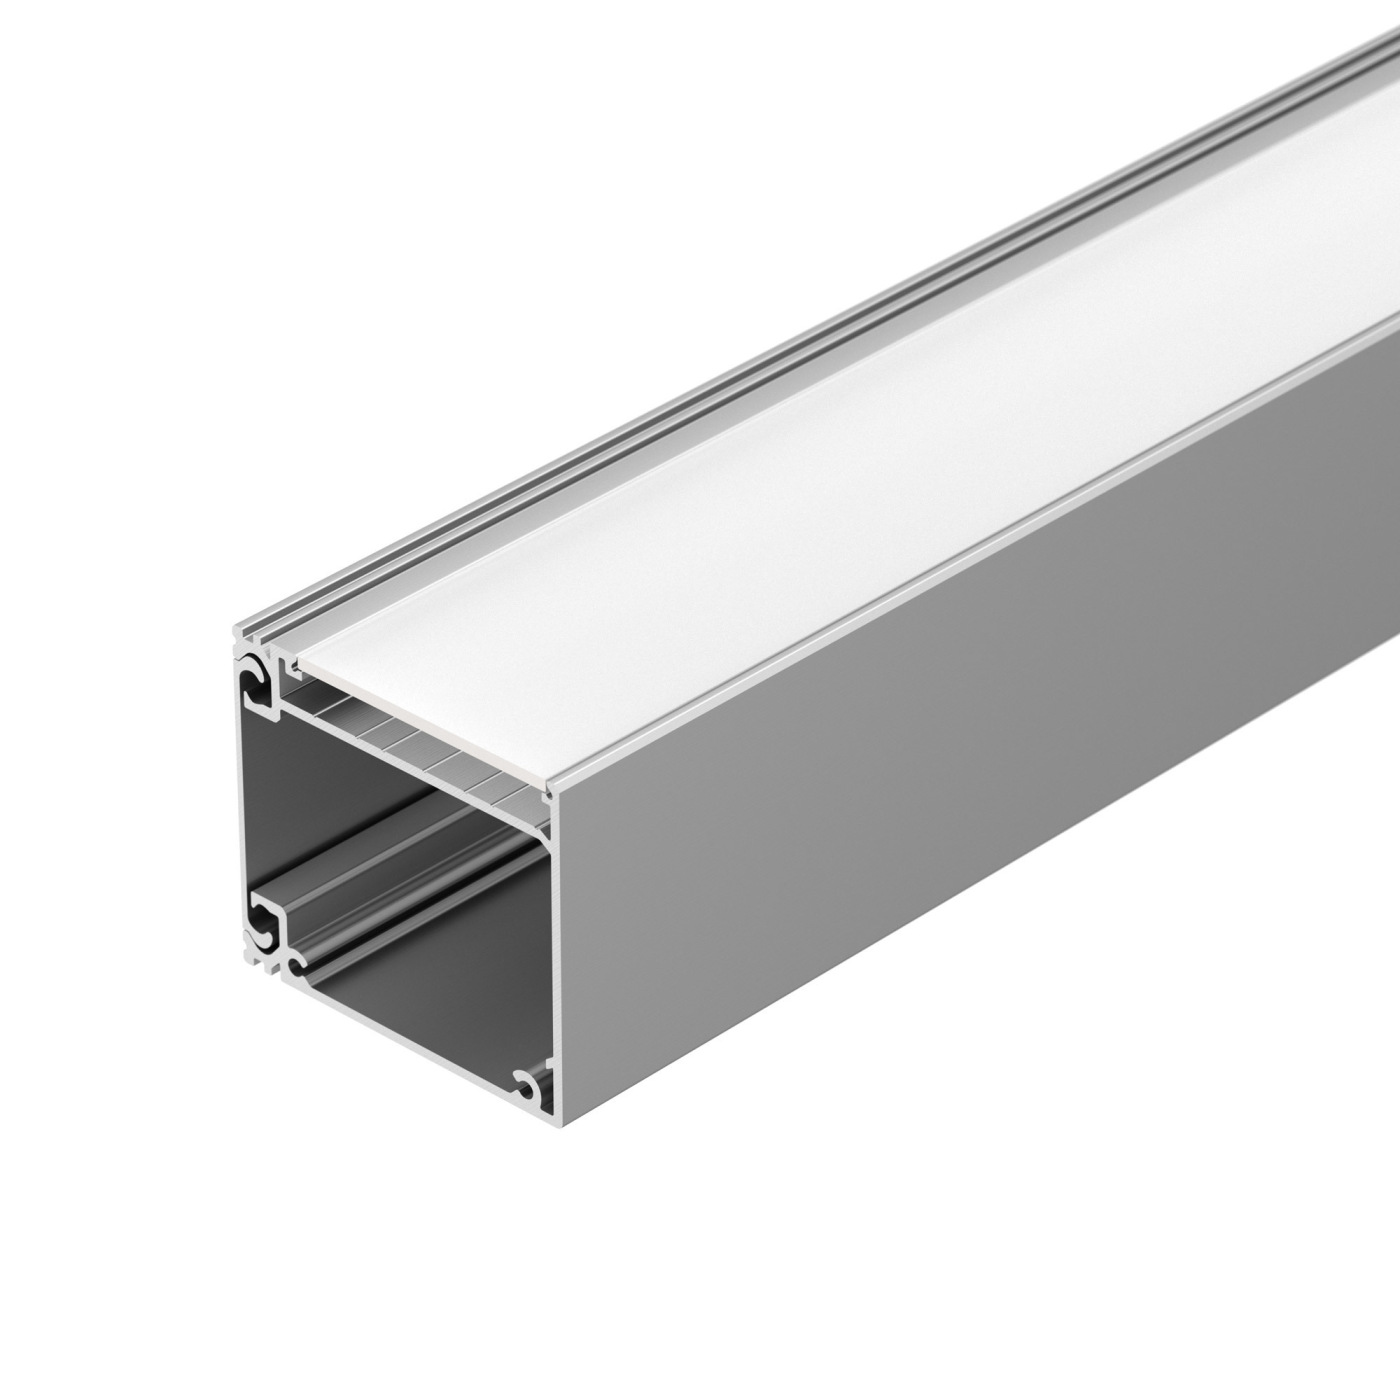 Профиль BOX60-SIDE-2000 ANOD профиль для светодиодной ленты накладной алюминиевый lc lp 3250 2 anod